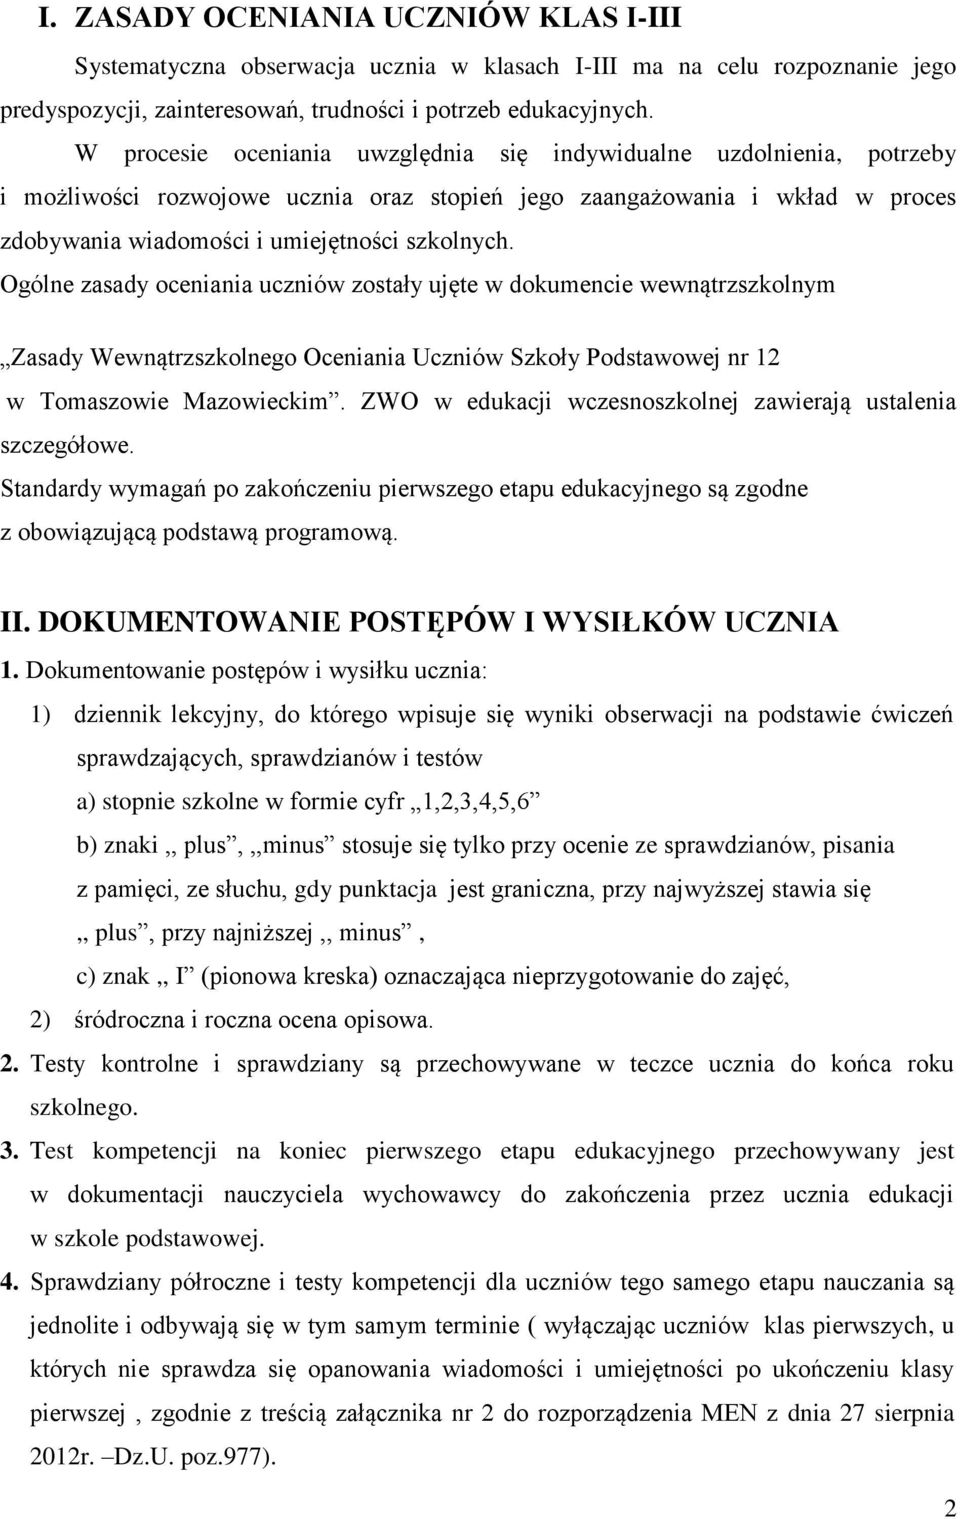 Ogólne zasady oceniania uczniów zostały ujęte w dokumencie wewnątrzszkolnym Zasady Wewnątrzszkolnego Oceniania Uczniów Szkoły Podstawowej nr 12 w Tomaszowie Mazowieckim.